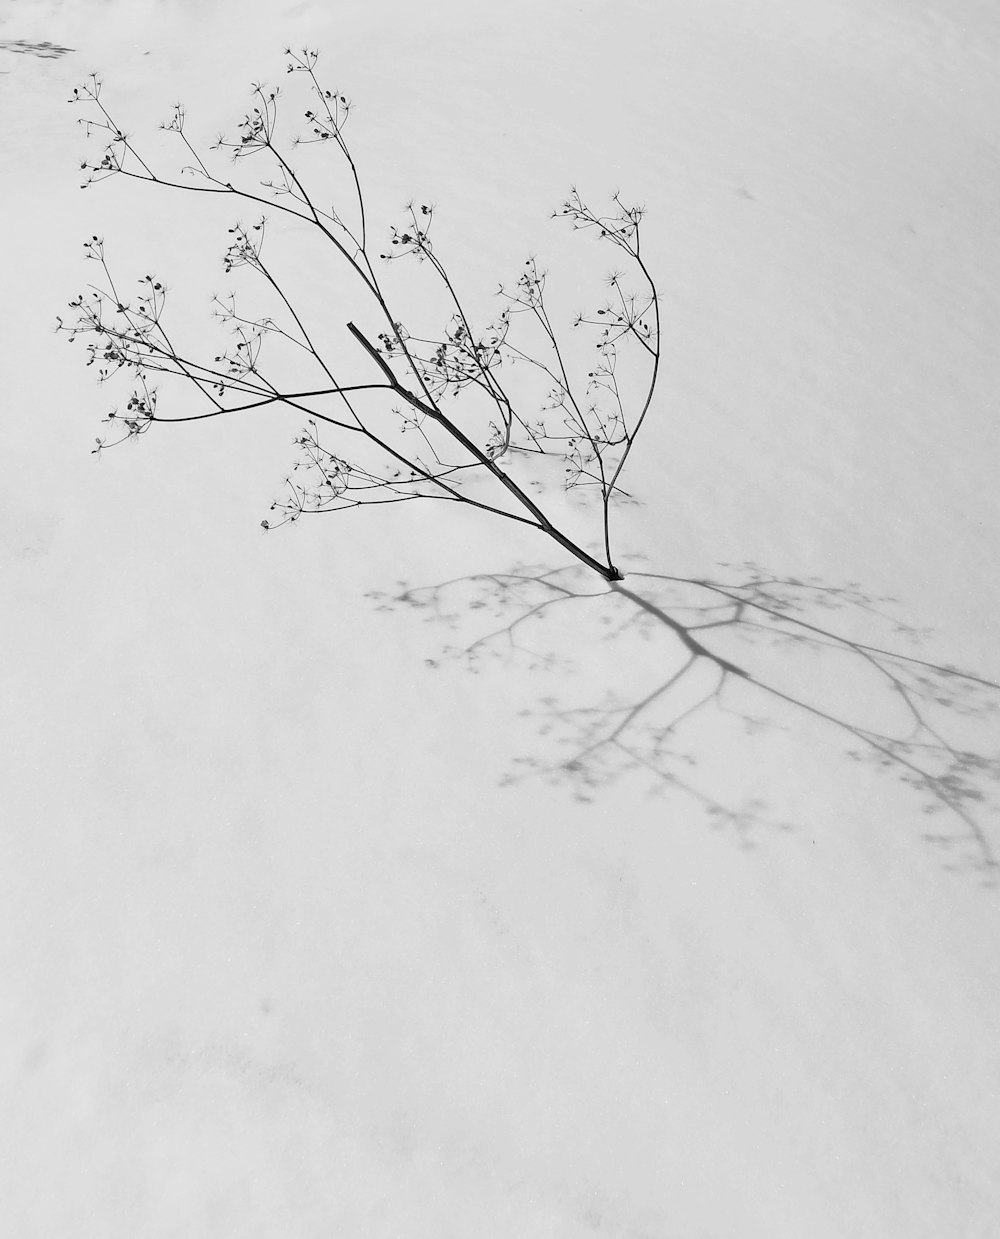 leafless tree on white snow